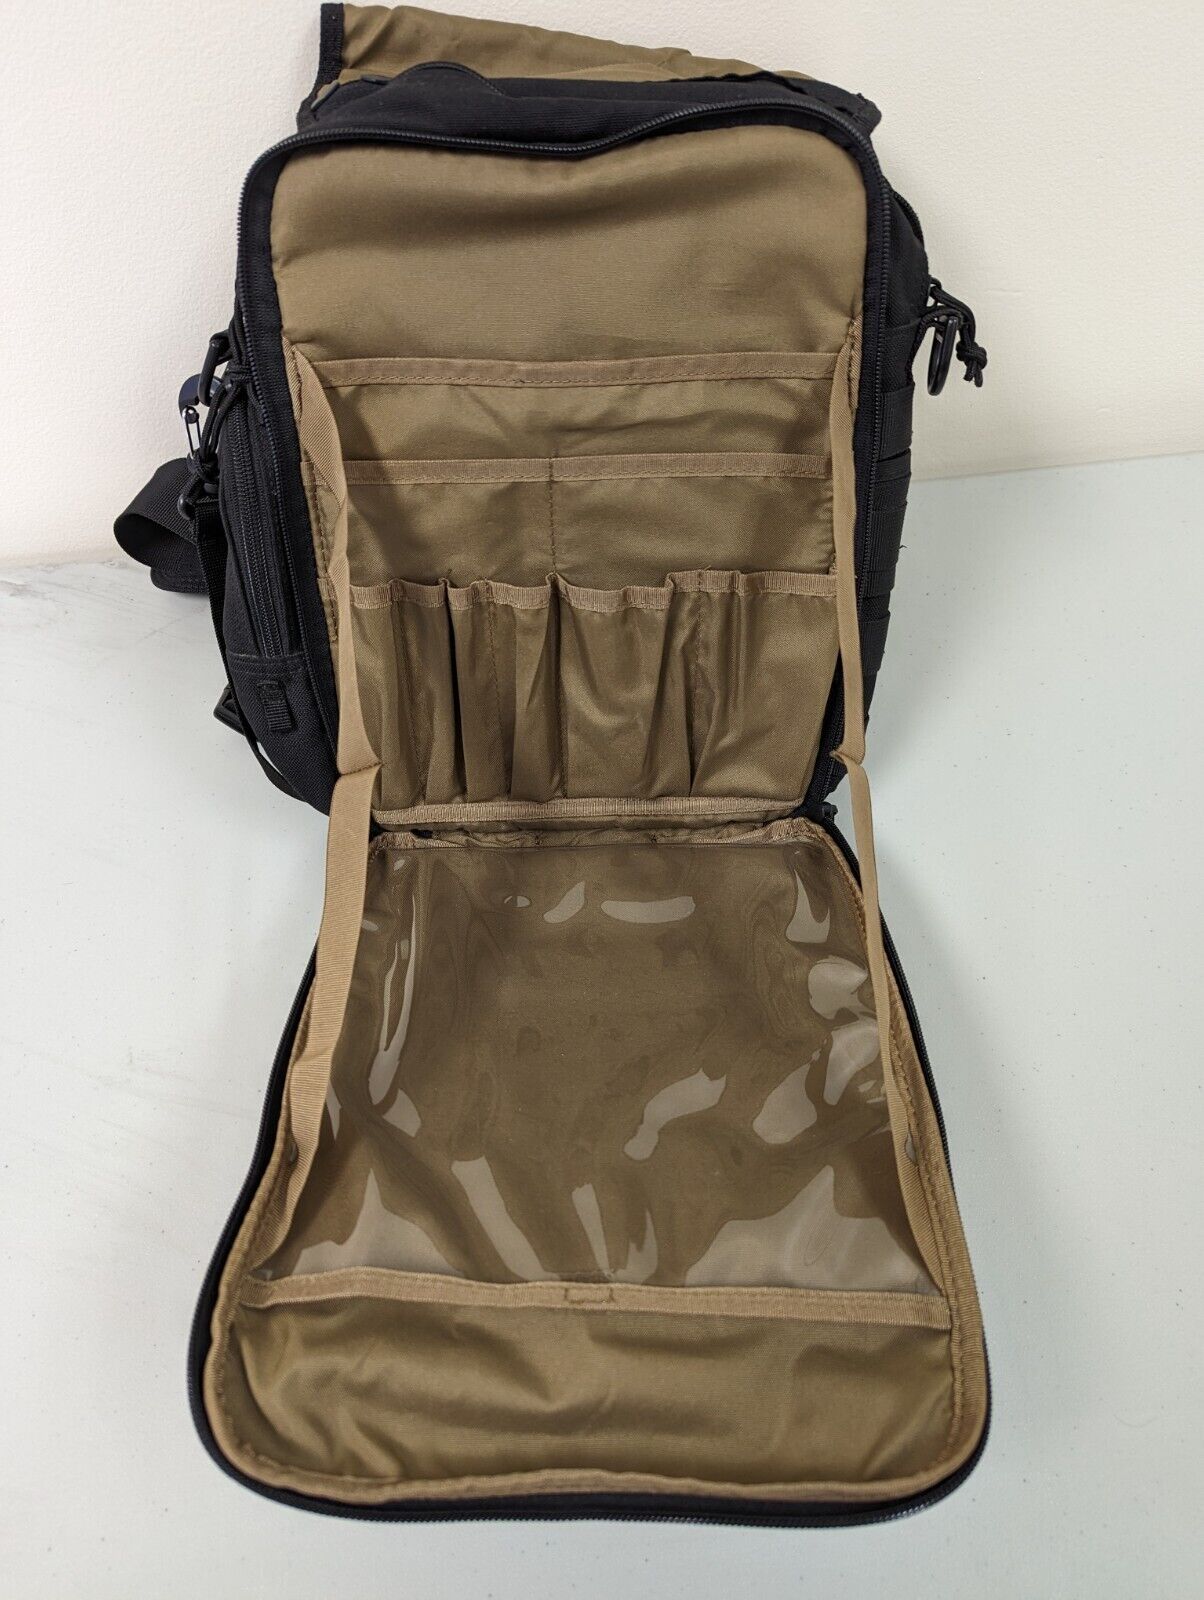 Hazard4 Tonto EDC Hip/Messenger Bag, Very Good/Excellent Condition